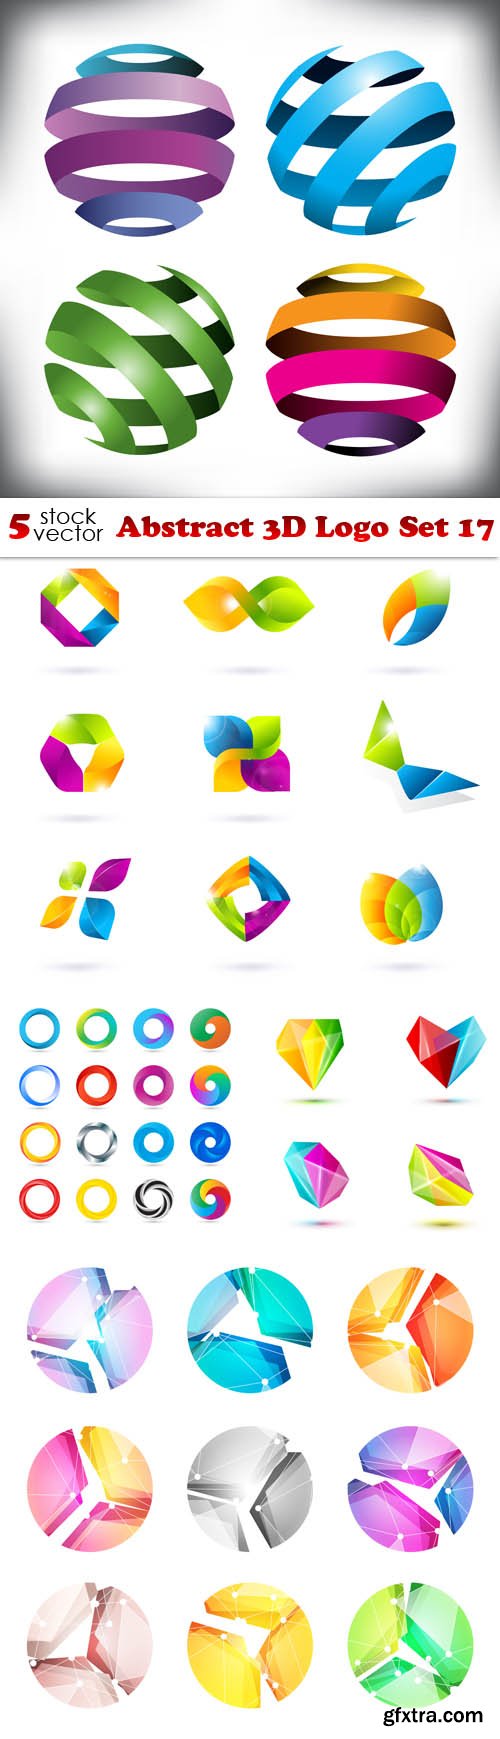 Vectors - Abstract 3D Logo Set 17